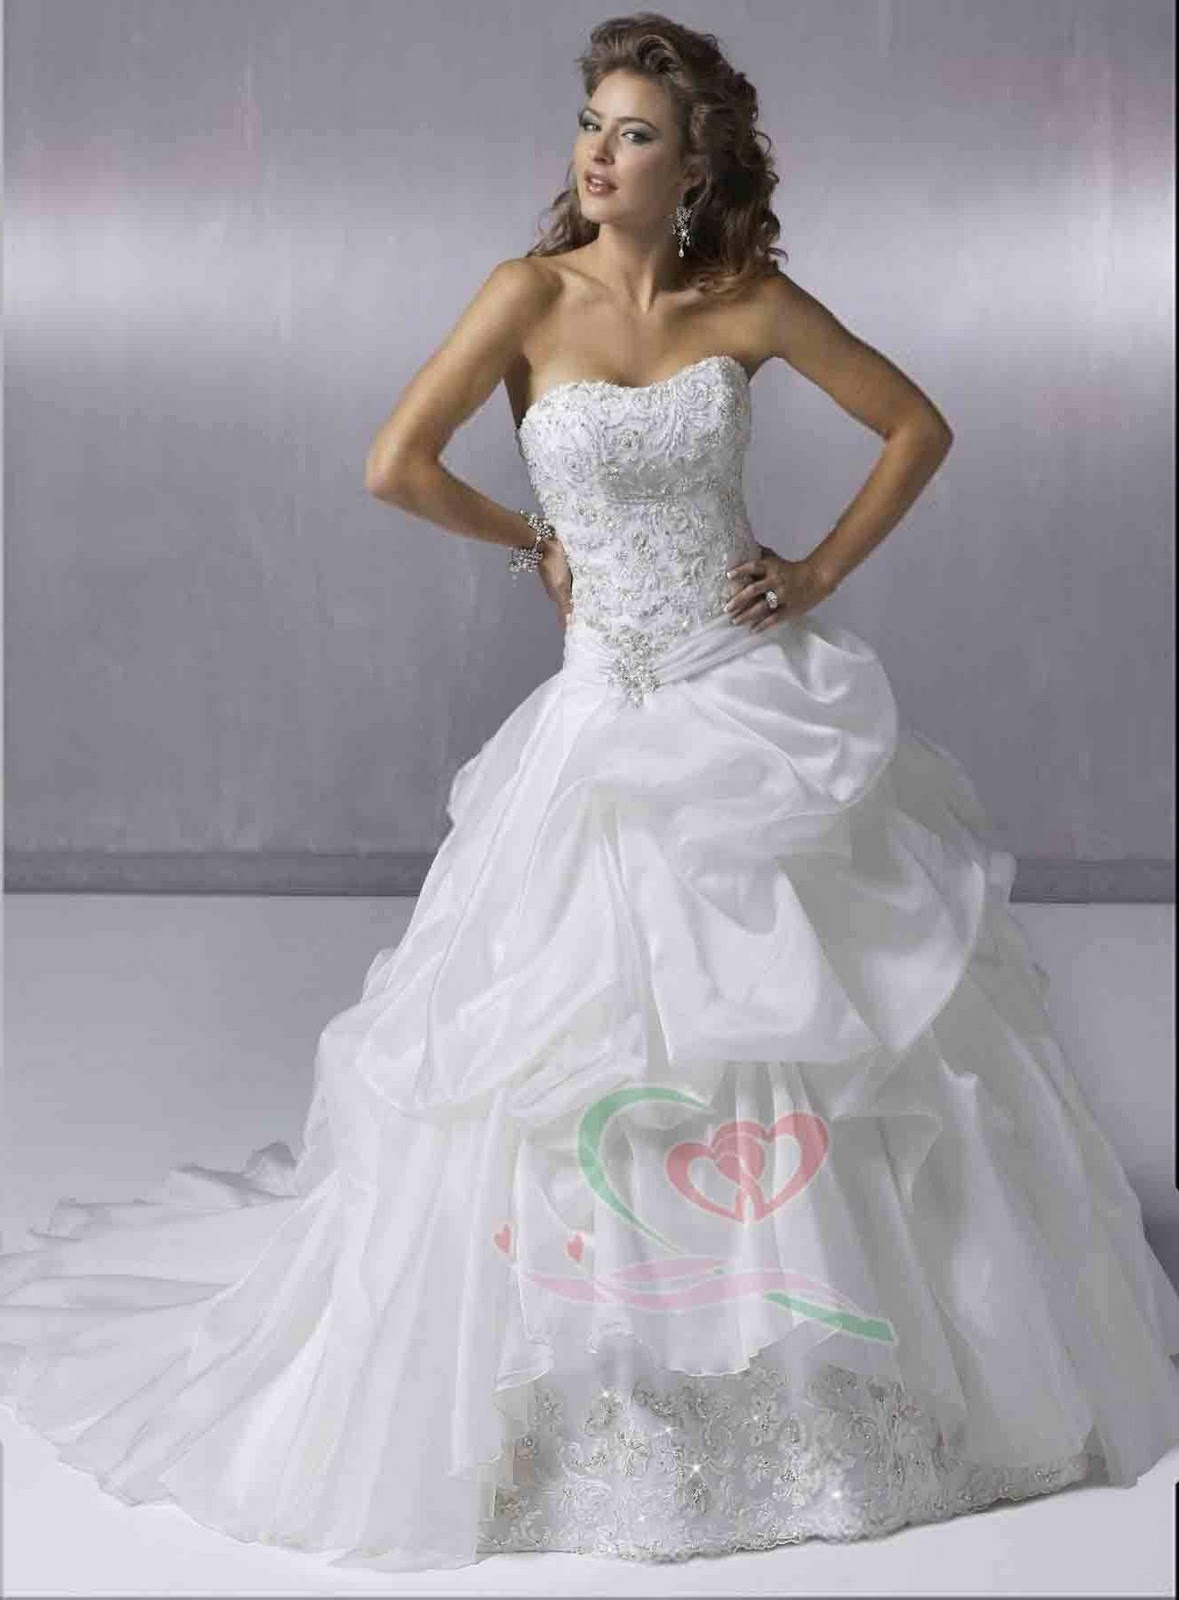 Wholesale supply of high fashion wedding dress, wedding custom WD 090